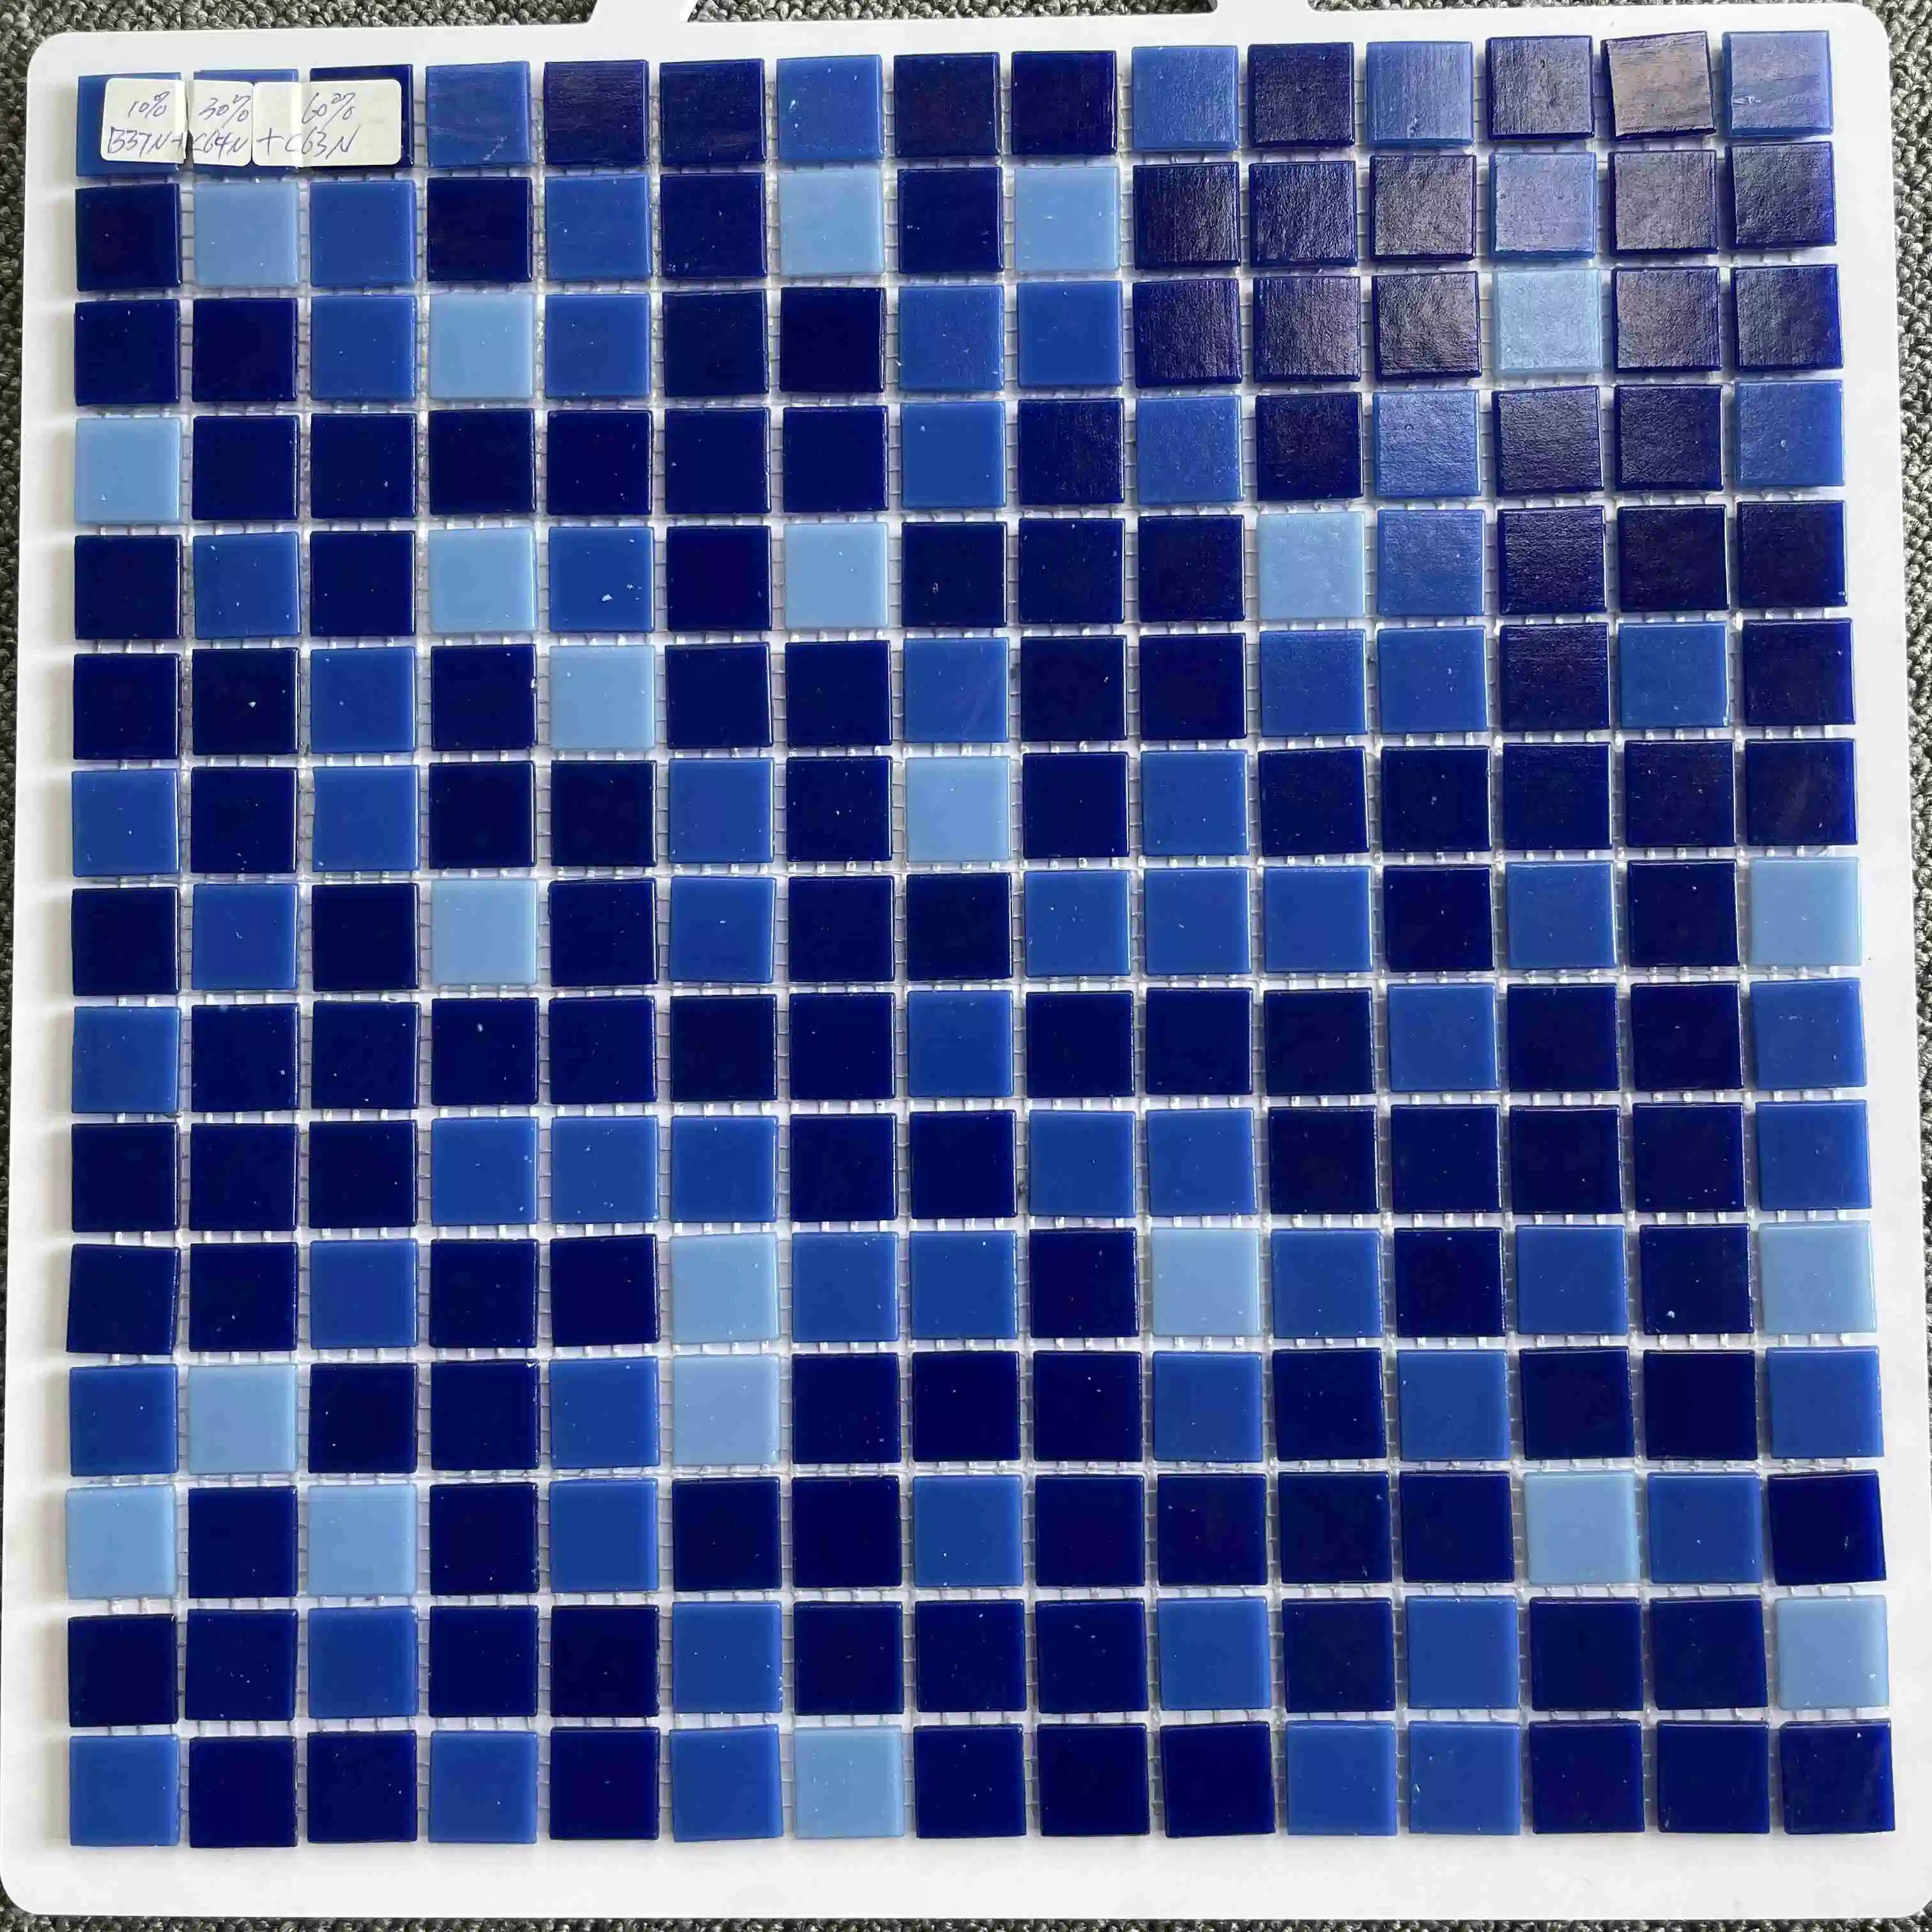 Foshan nouveau décoratif populaire des matériaux de construction piscine bleu cristal brillant carrelage mural en mosaïque de verre